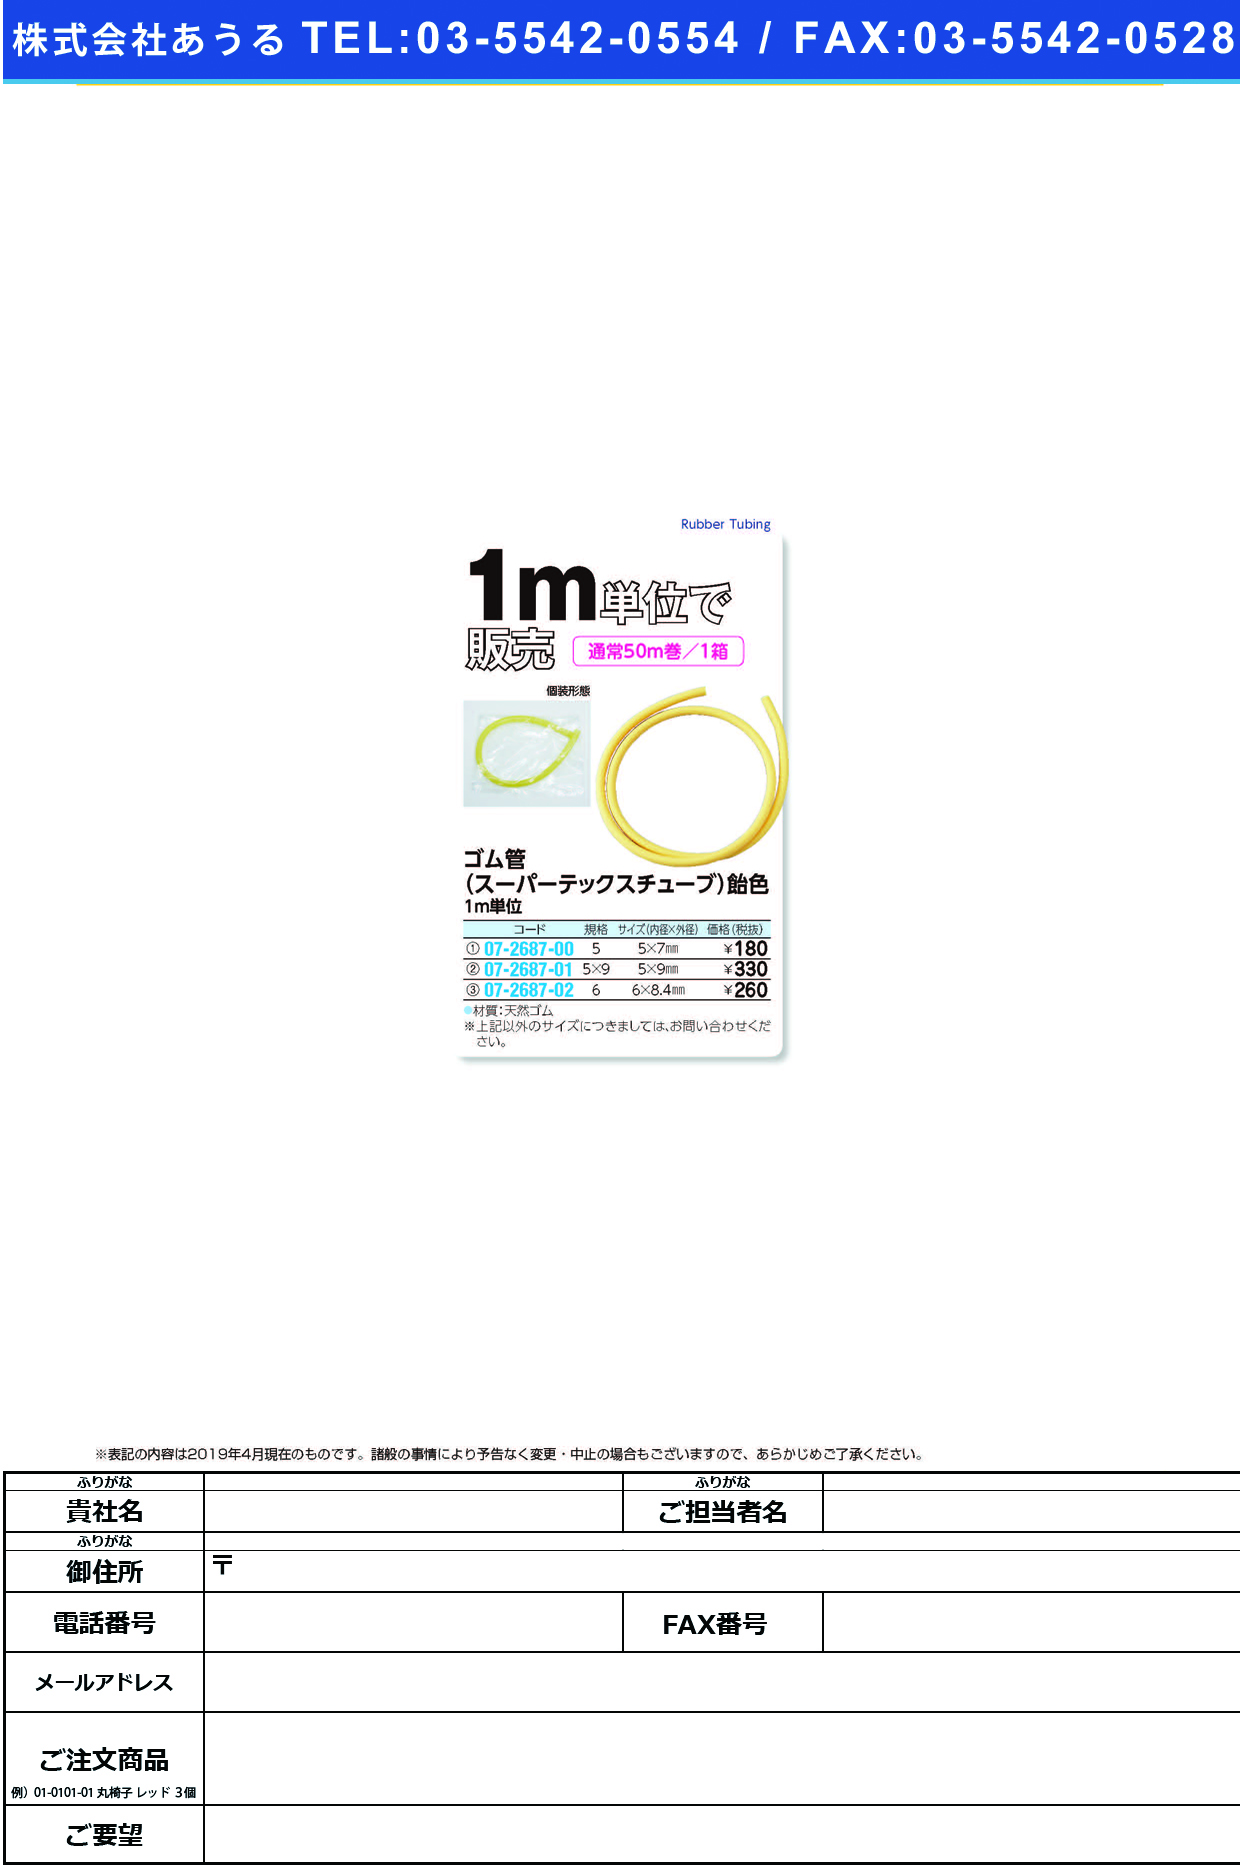 (07-2687-03)飴ゴム管（スーパーテックス）バラ NO.7(7X9.6MM) ｺﾞﾑｶﾝ【1ｍ単位】【2019年カタログ商品】